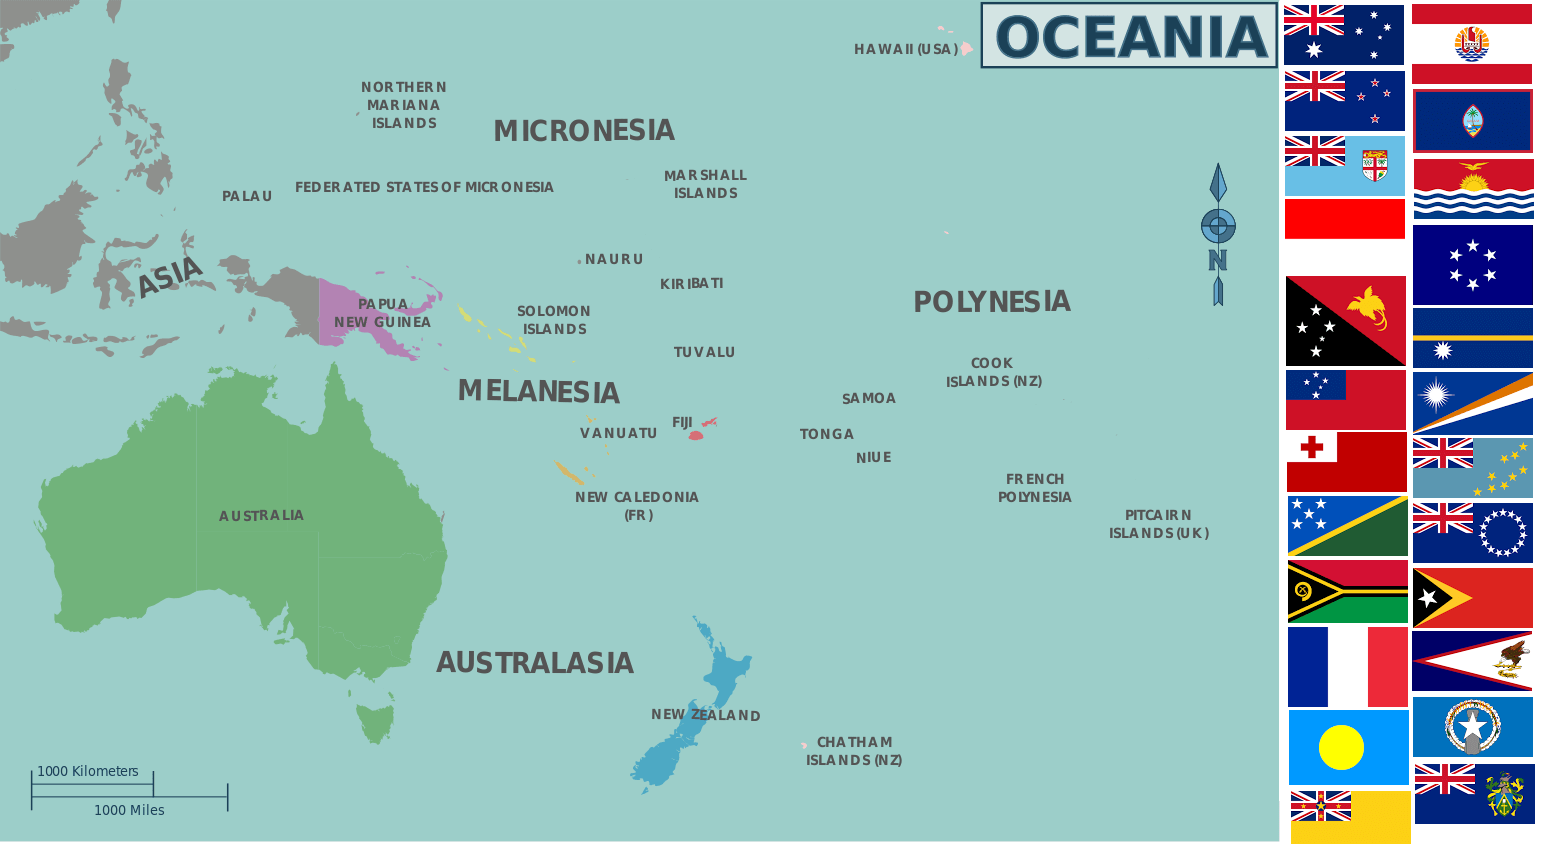 Таблица австралия и океания